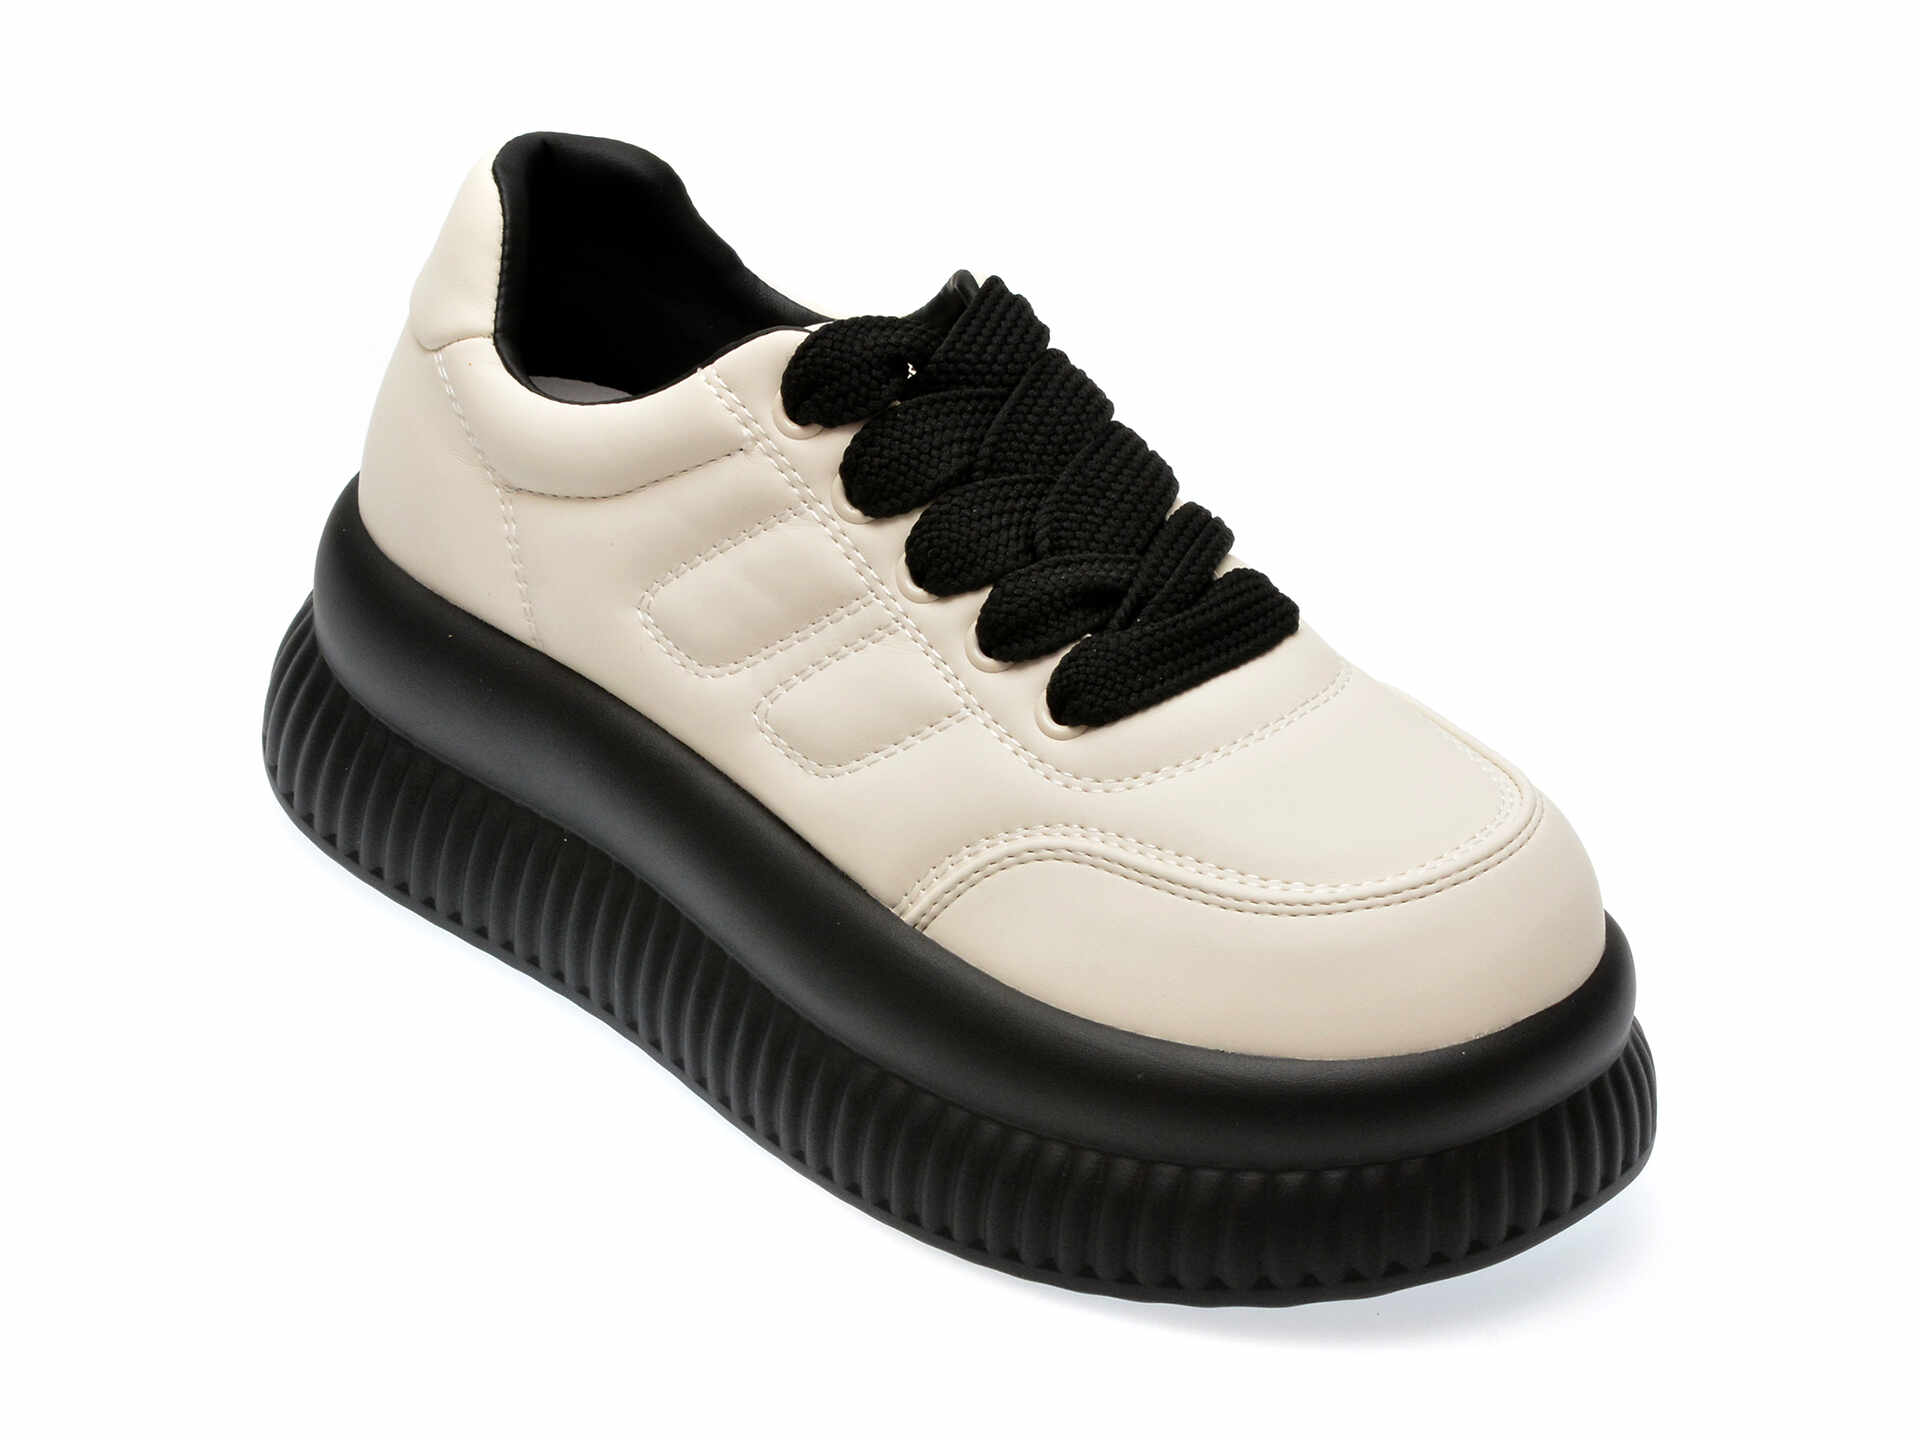 Pantofi casual FLAVIA PASSINI alb-negru, 11921, din piele ecologica